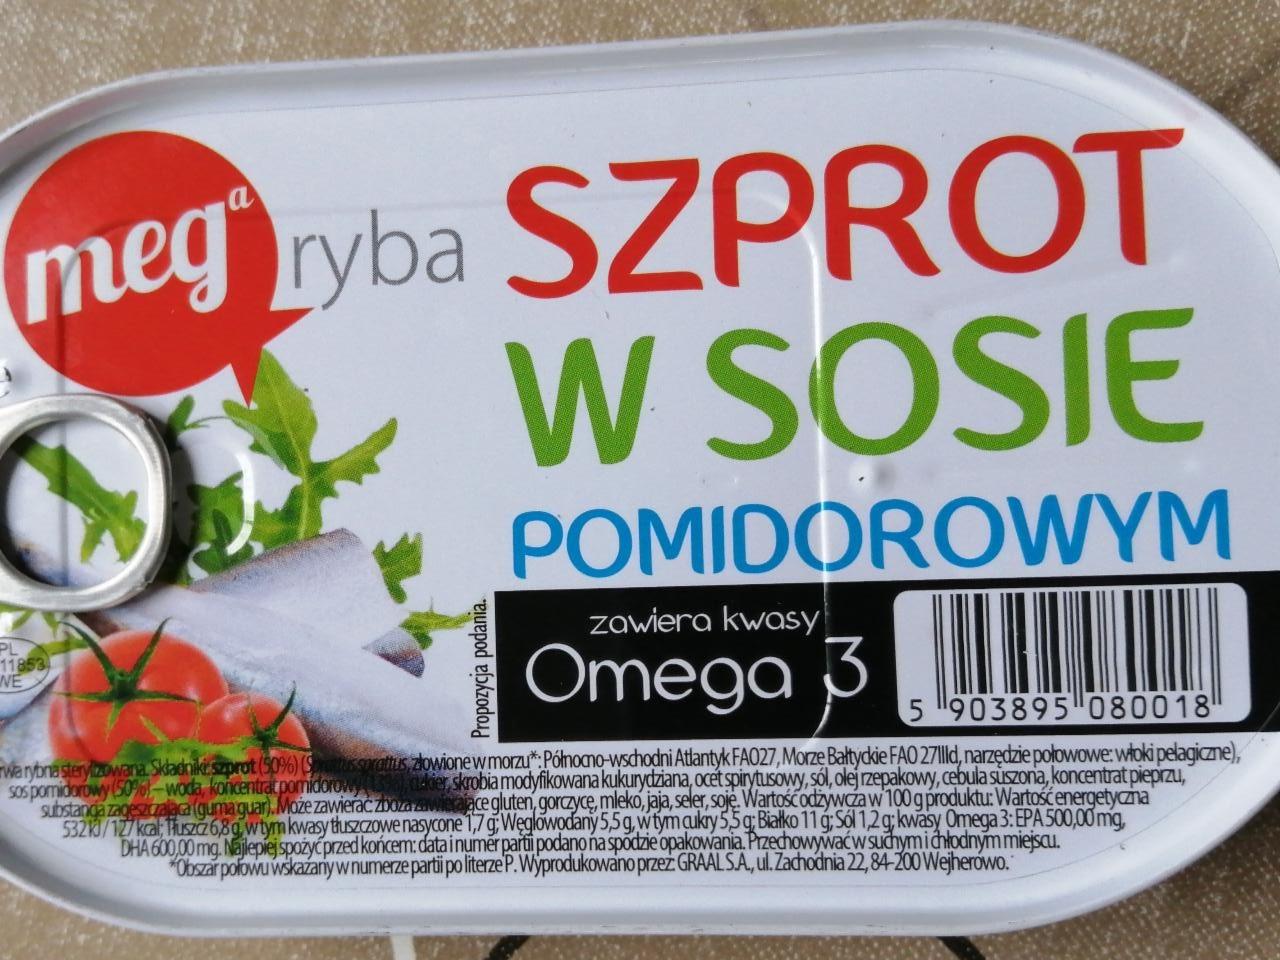 Фото - Szprot w sosie pomidorowym Mega Ryba